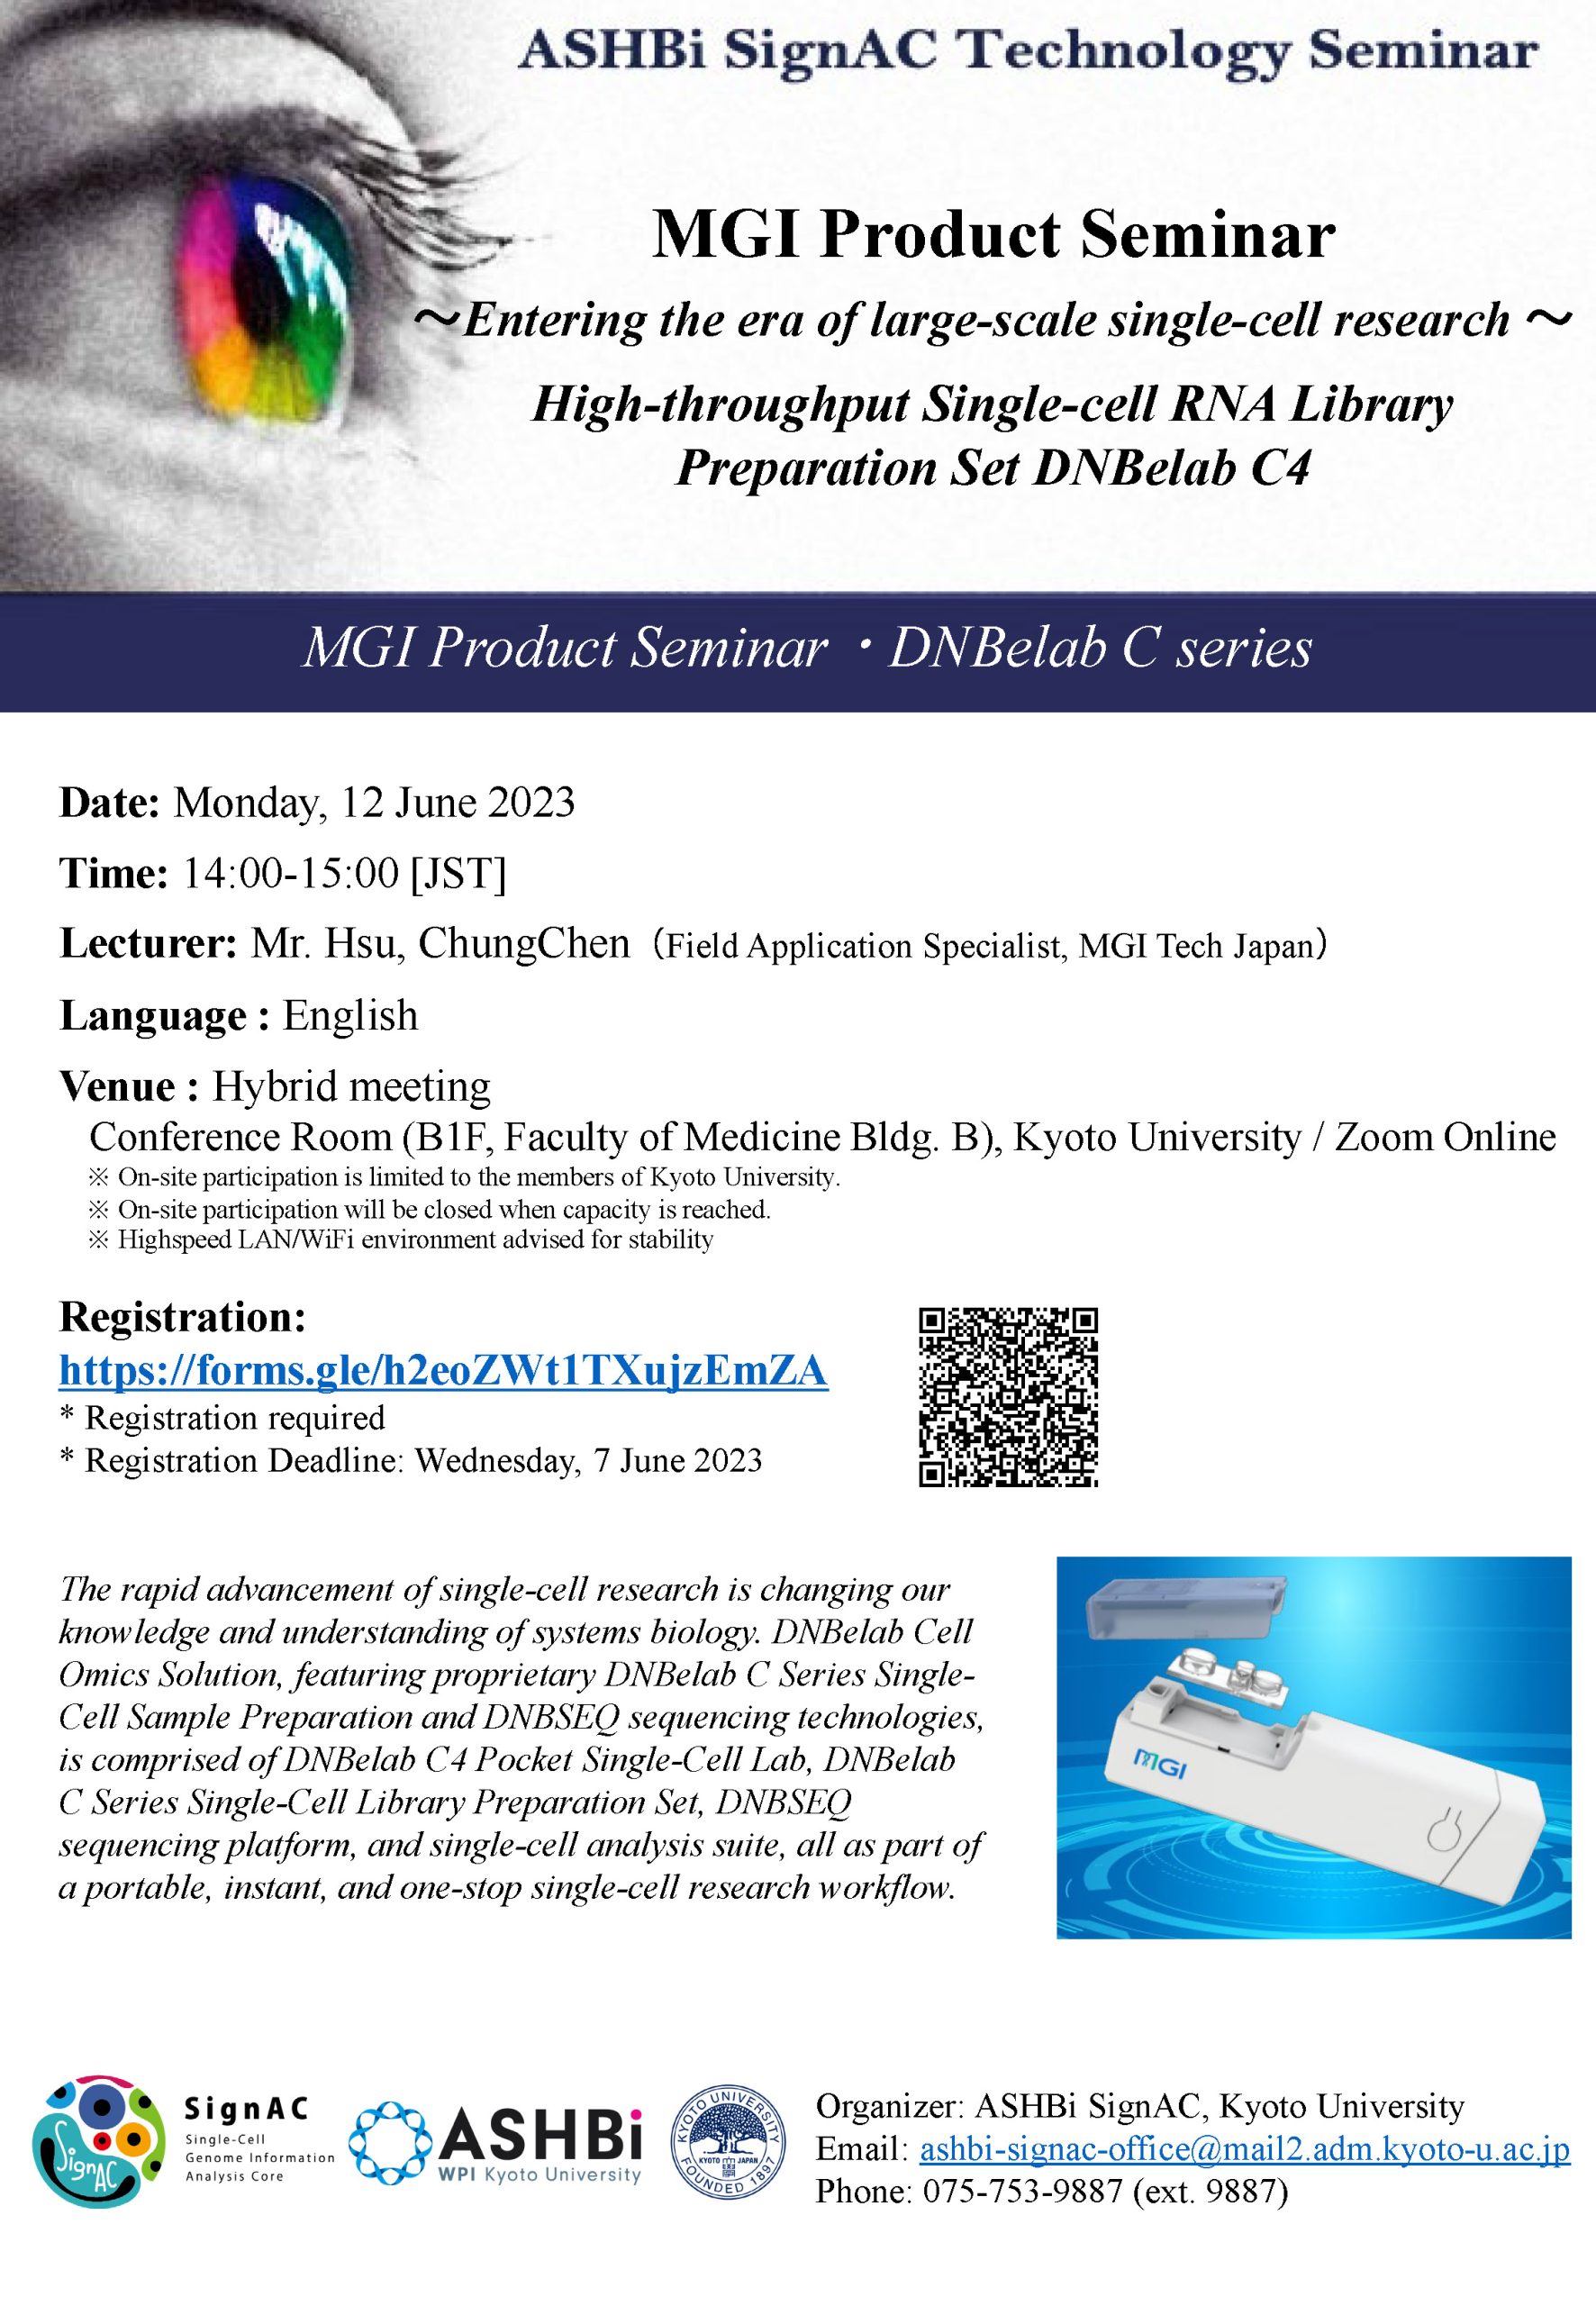 ASHBi SignAC Technology Seminar – MGI Tech Japan